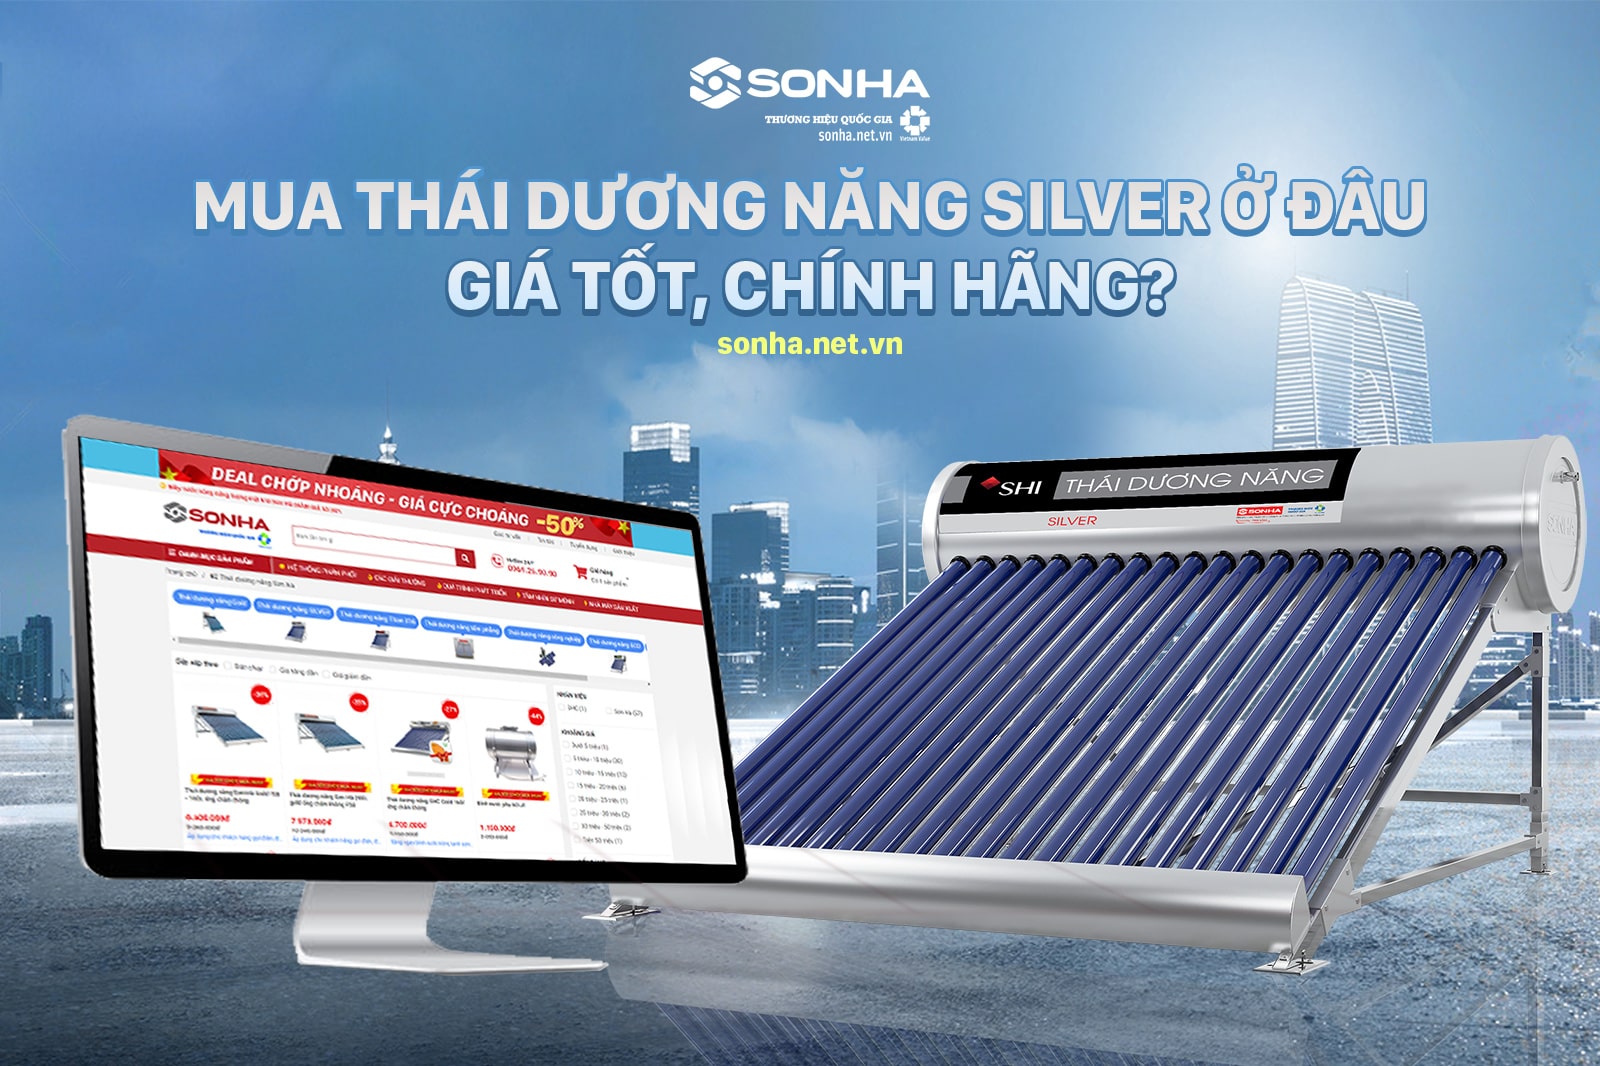 Sonha.net.vn - Địa điểm mua hệ thống nước nóng năng lượng mặt trời Silver chính hãng, uy tín